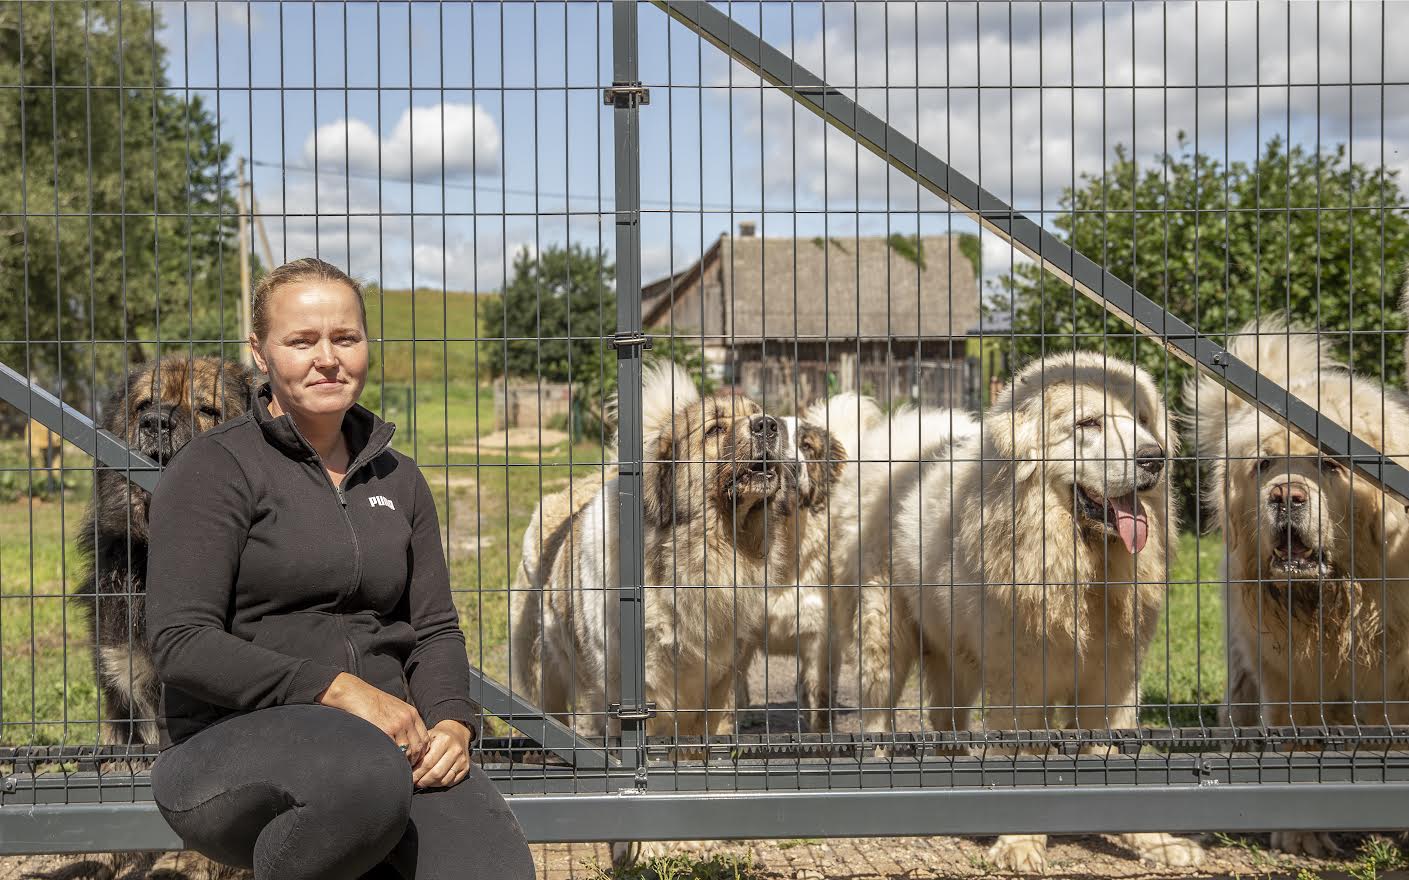 Lily Mals nimetab koerte kasvatamist pigem hobiks, mida tehakse põhitöö kõrvalt. Ühtlasi ei müüda ühtki Kaukaasia lambakoera kutsikat kuhugi, kus ei olda kindel koha sobivuses. Foto: AIGAR NAGEL